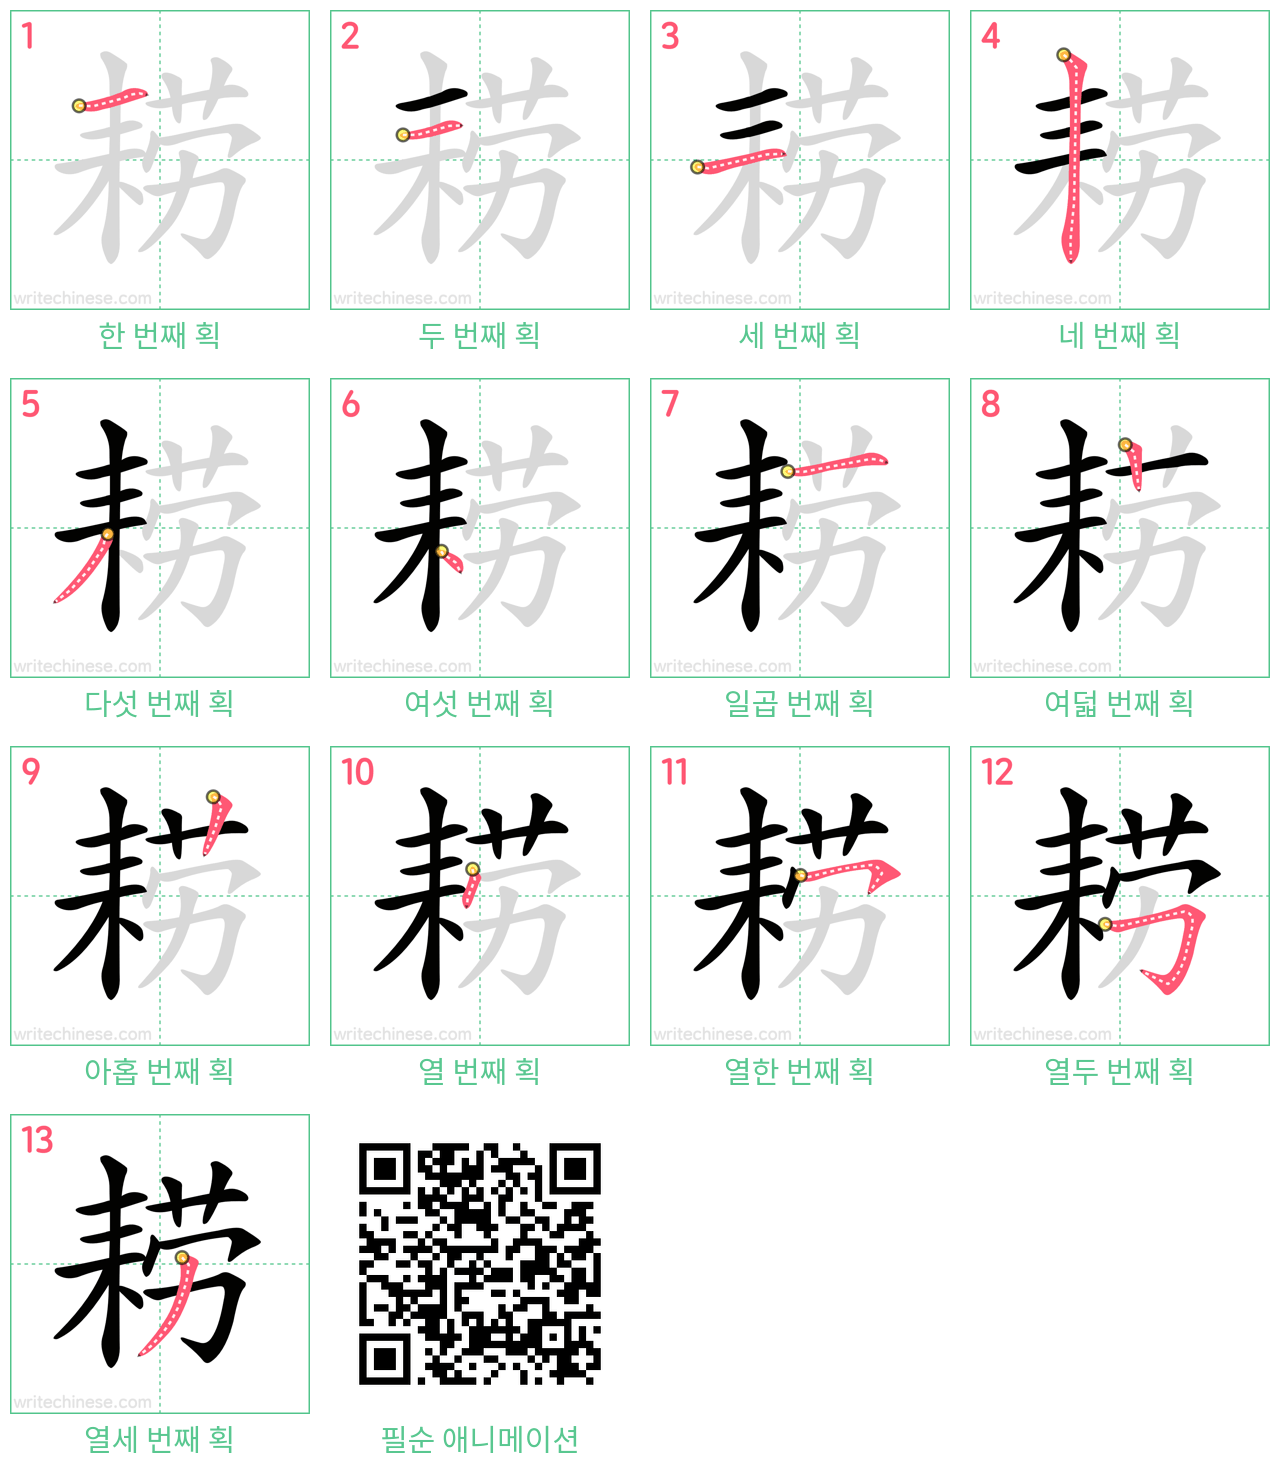 耢 step-by-step stroke order diagrams